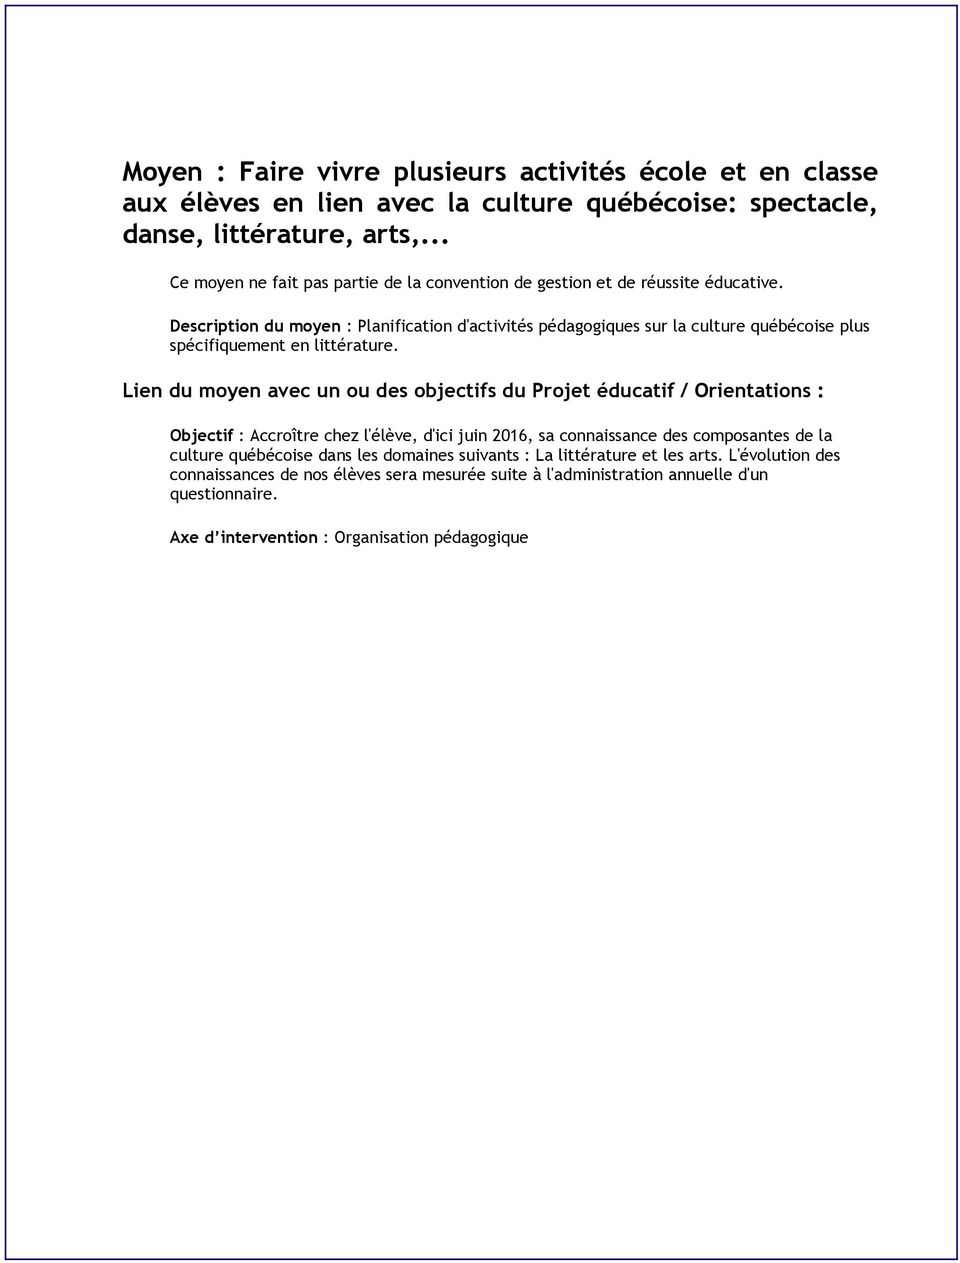 Description du moyen : Planification d'activités pédagogiques sur la culture québécoise plus spécifiquement en littérature.